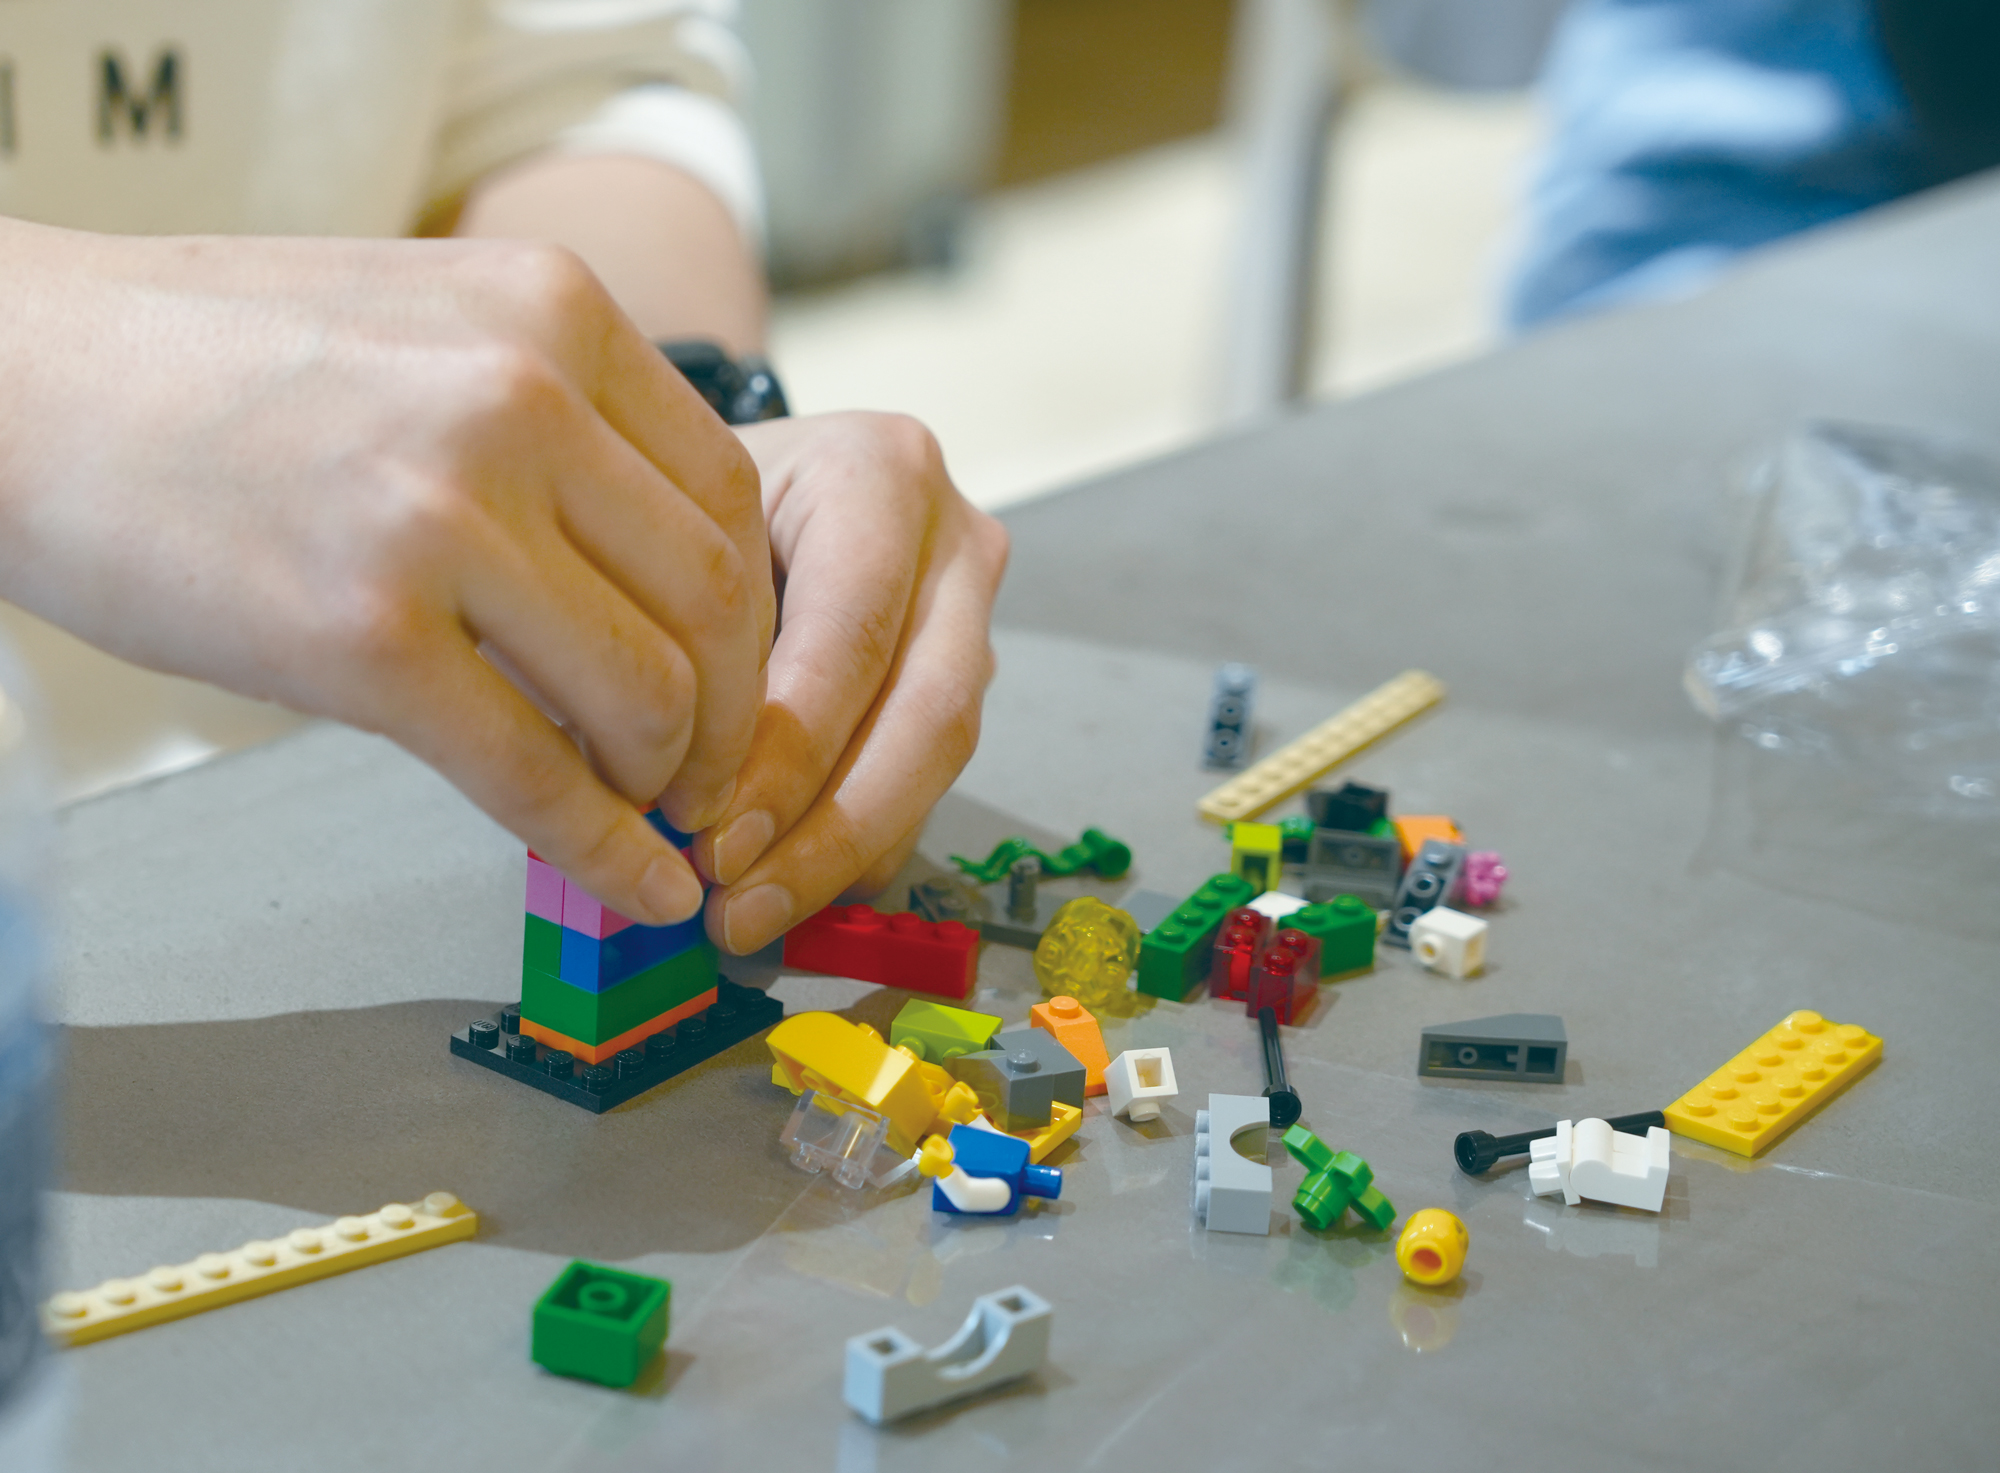 レゴ研修にてレゴブロックを組み立てる途中の手